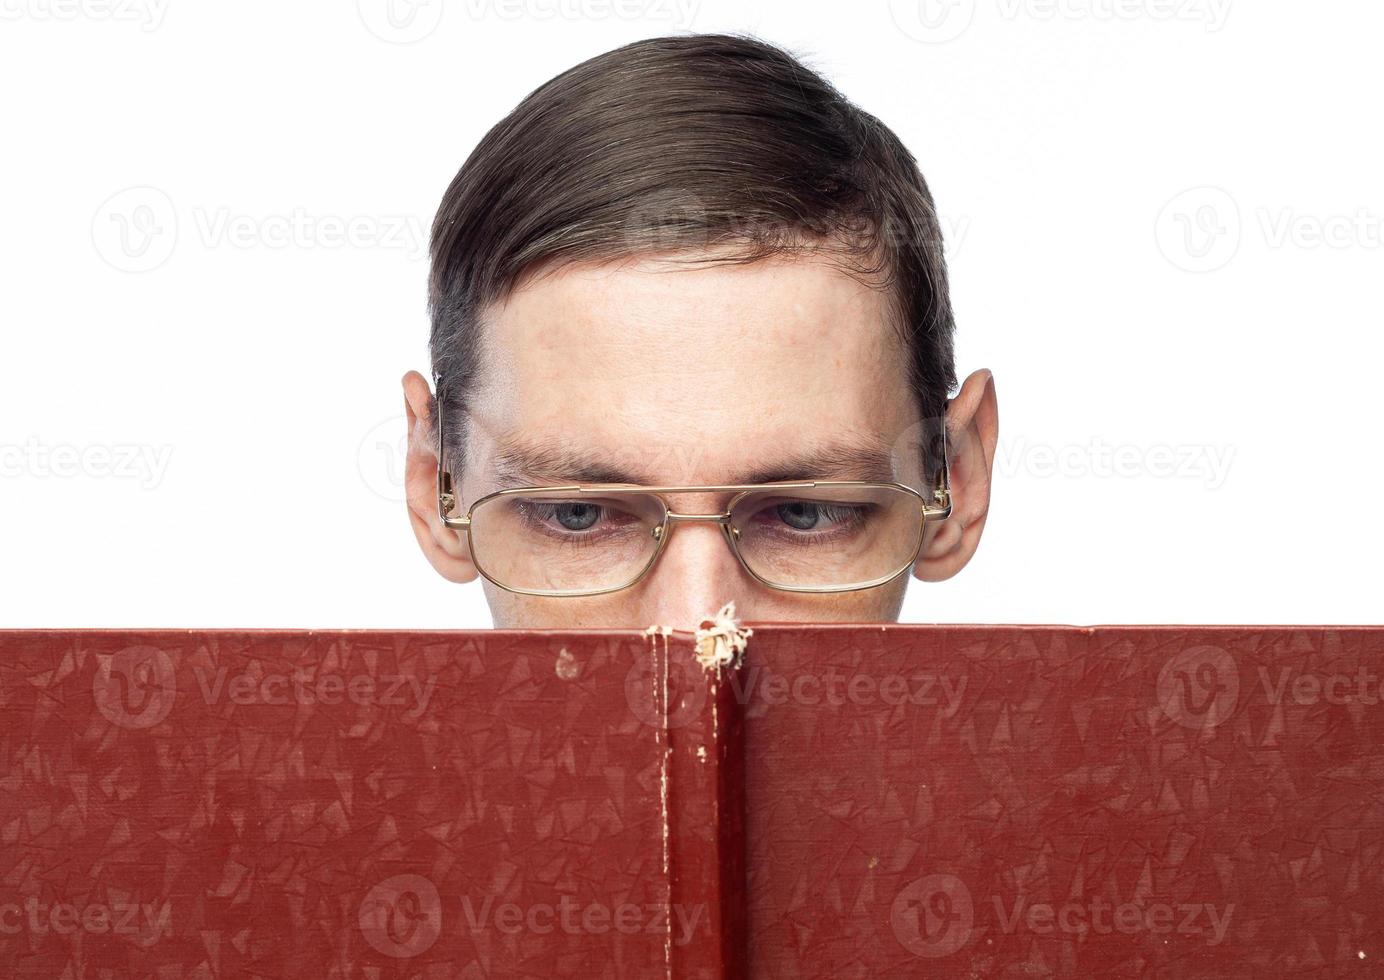 le visage de l'homme est couvert par un grand cahier rouge, sur un fond isolé photo